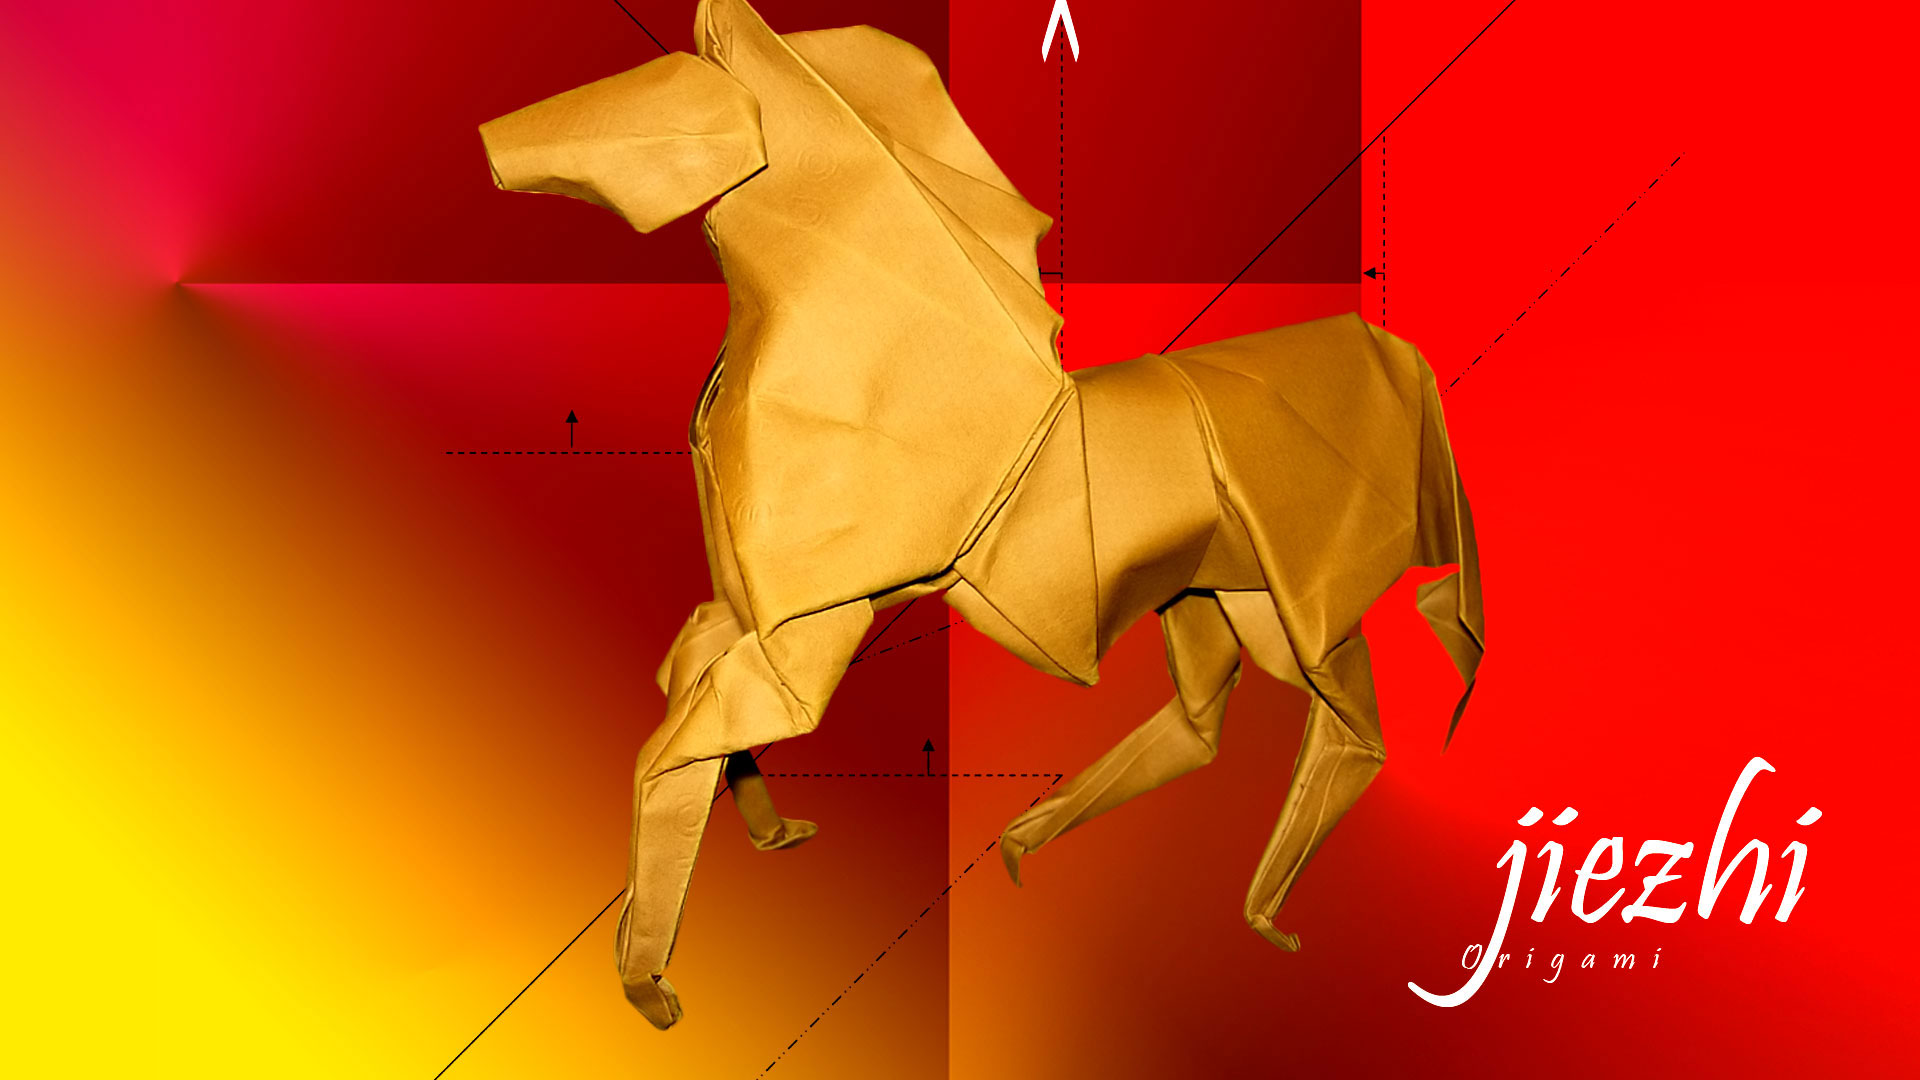 Un cheval en papier, un des signes du zodiaque chinois. © Futura